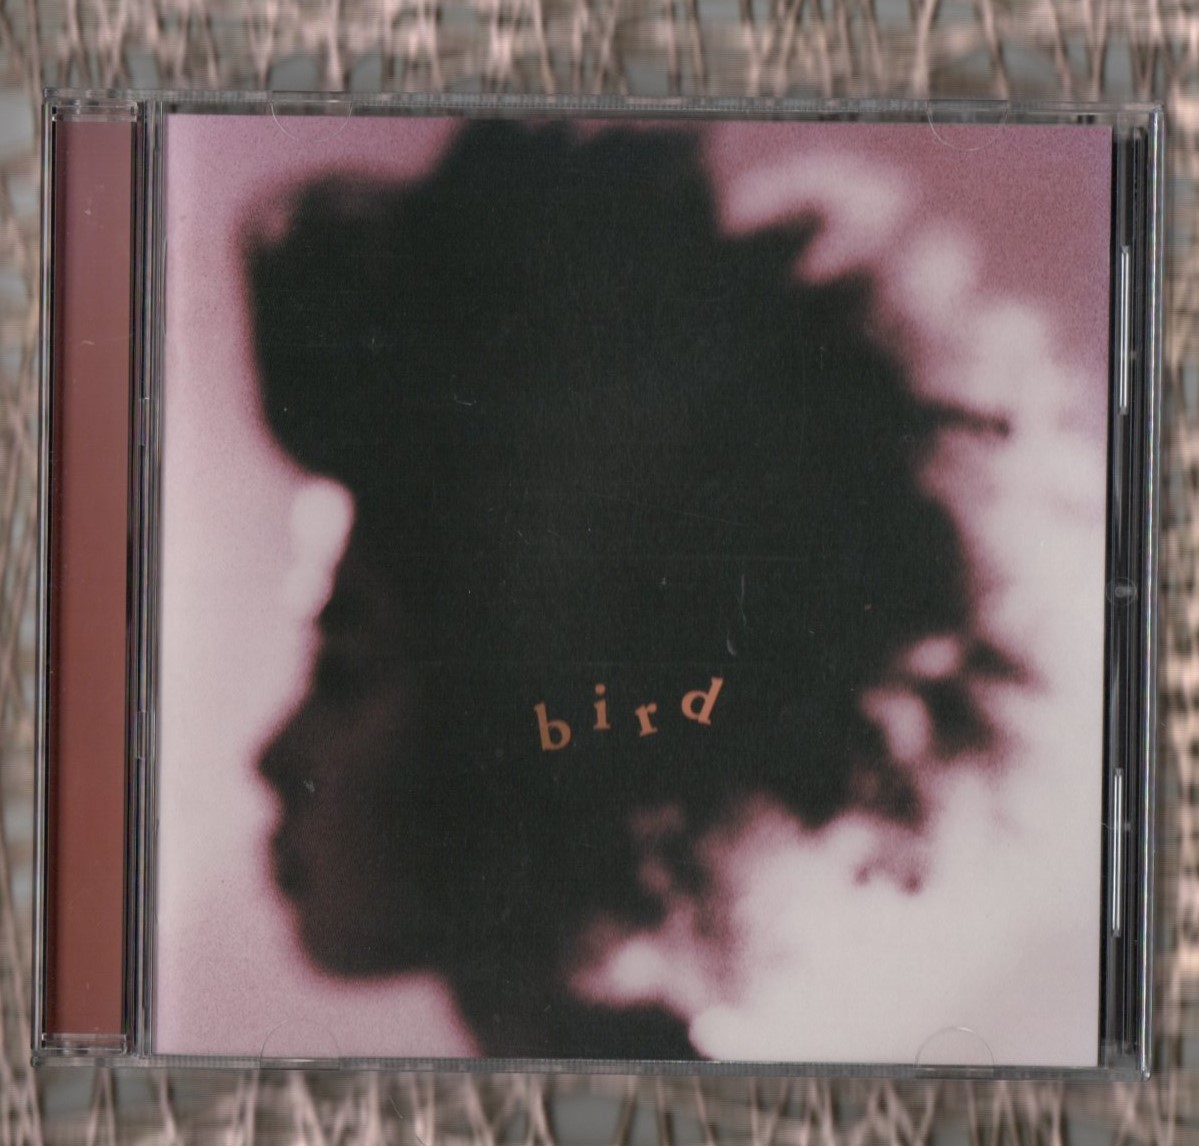 ∇ バード 13曲入 1stアルバム 1999年 CD/bird/SOULS BEATS 君の音が聴こえる場所へ 空の瞳 満ちてゆく唇 収録/大沢伸一 参加/ピーチな関係_※プラケースは交換済みです。